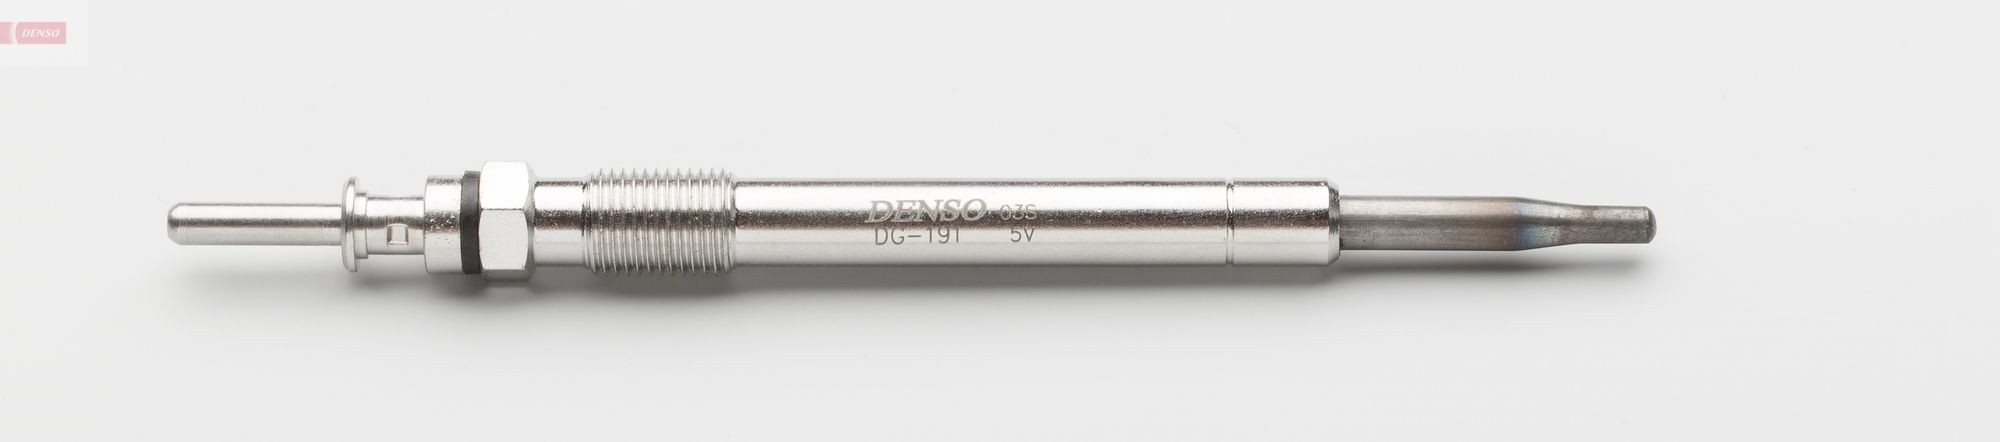 DENSO DG-191 Glühkerze Länge über Alles: 133mm, Gewindemaß: M10x1.0